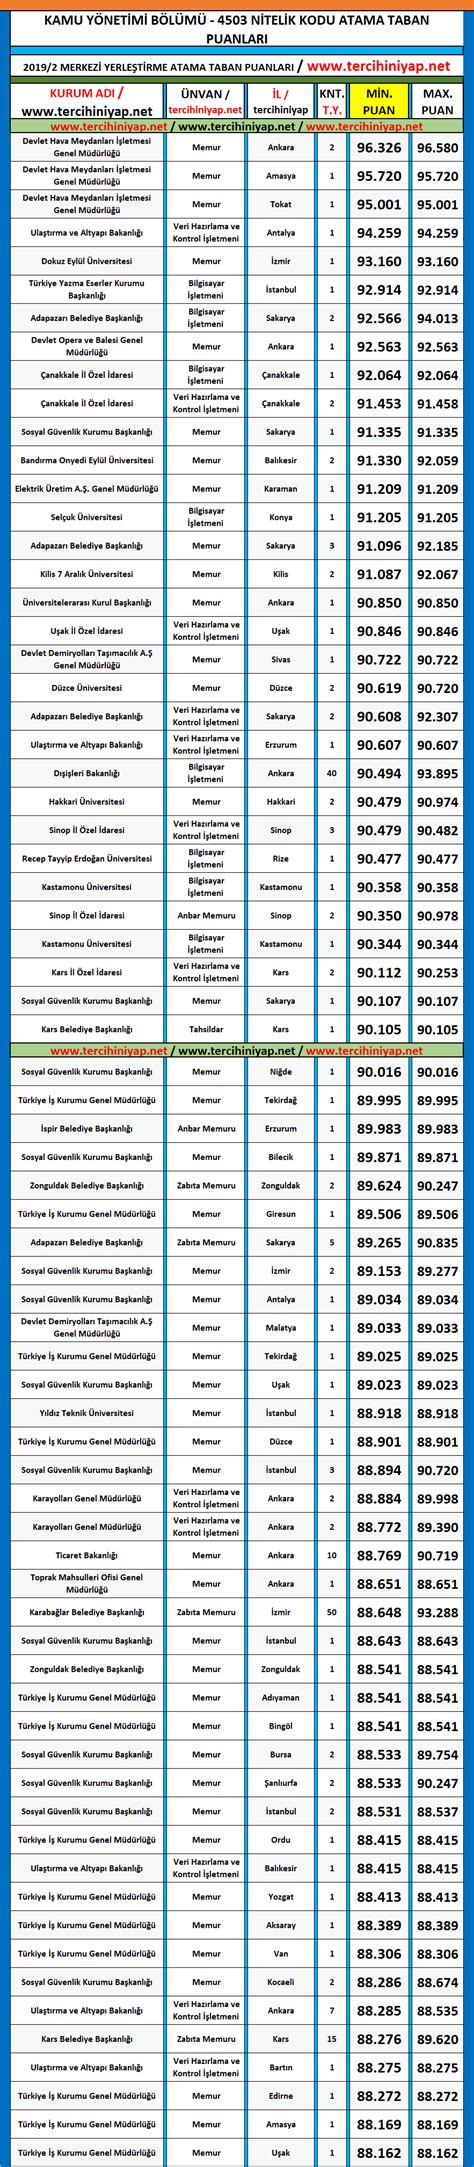 kamu yönetimi kpss atama puanları 2019